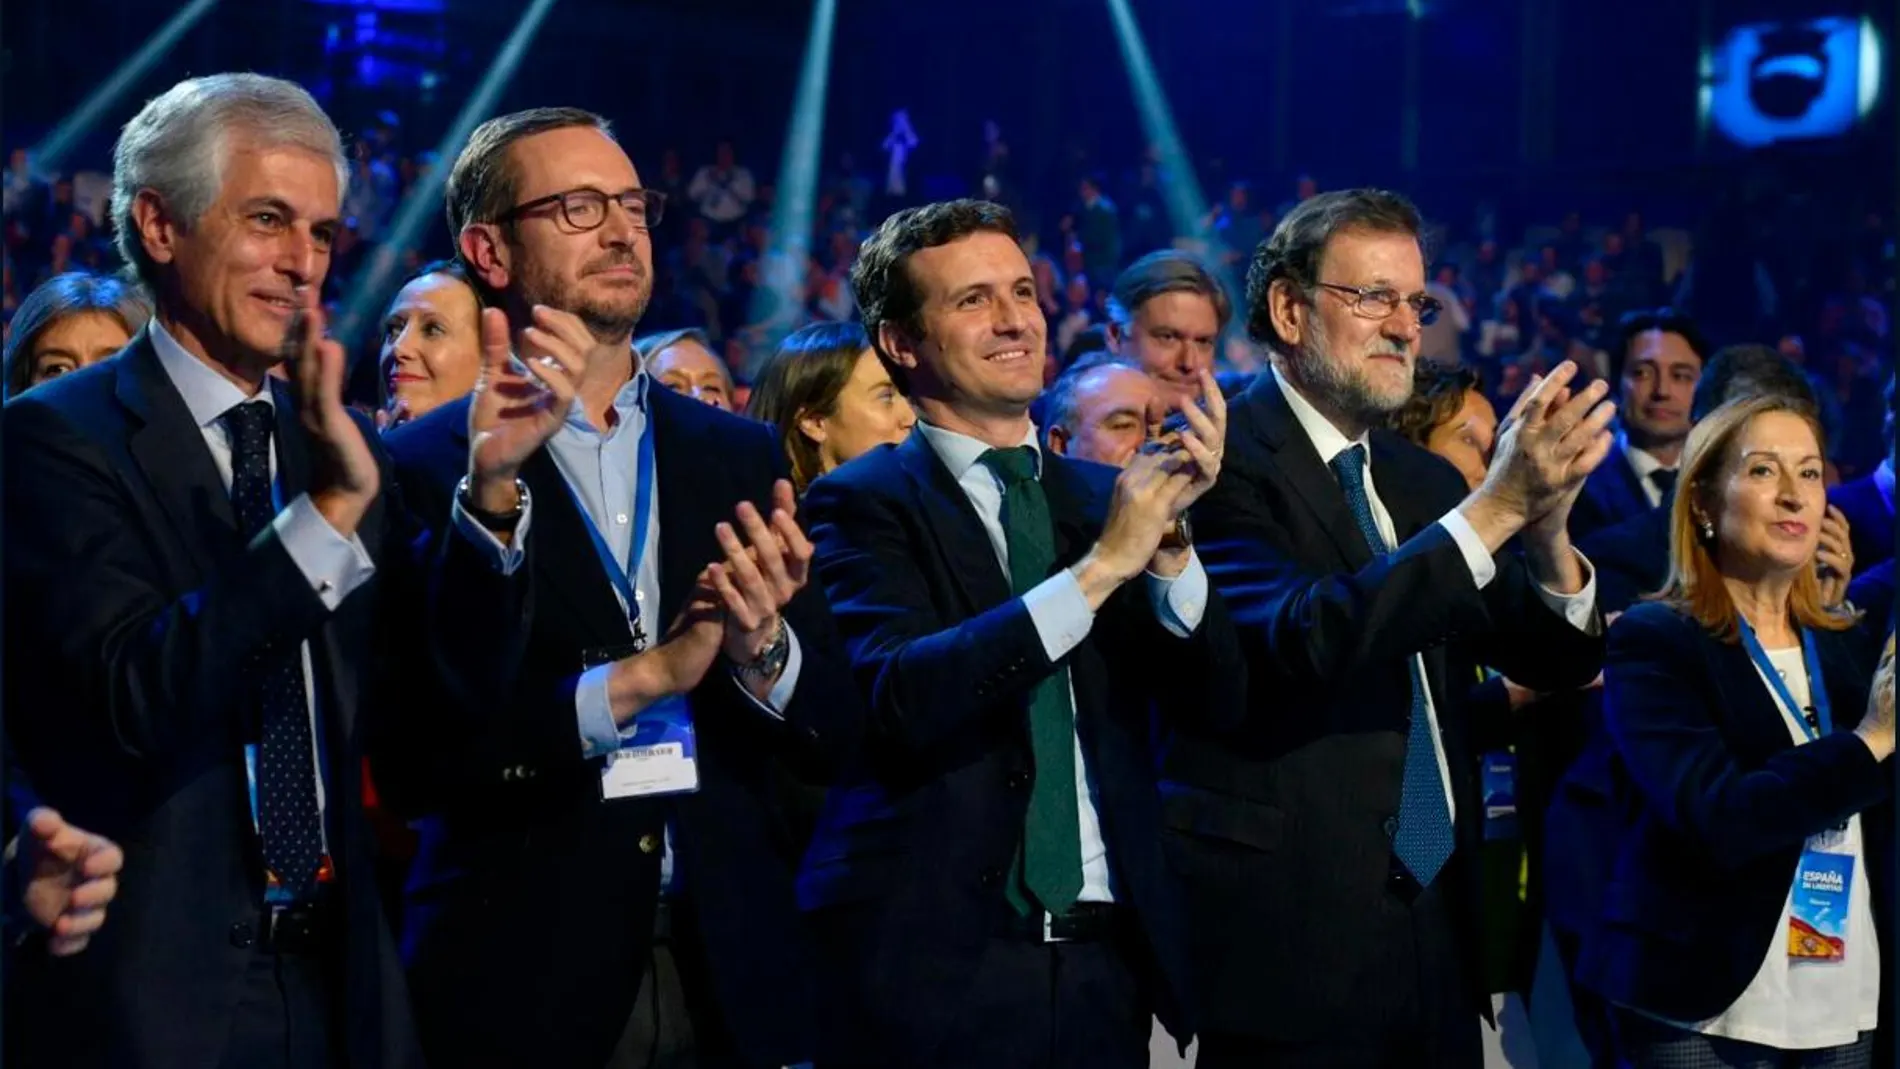 Adolfo Suárez Illana, Javier Maroto, Pablo Casado, Mariano Rajoy y Ana Pastor durante la convención del Partido Popular